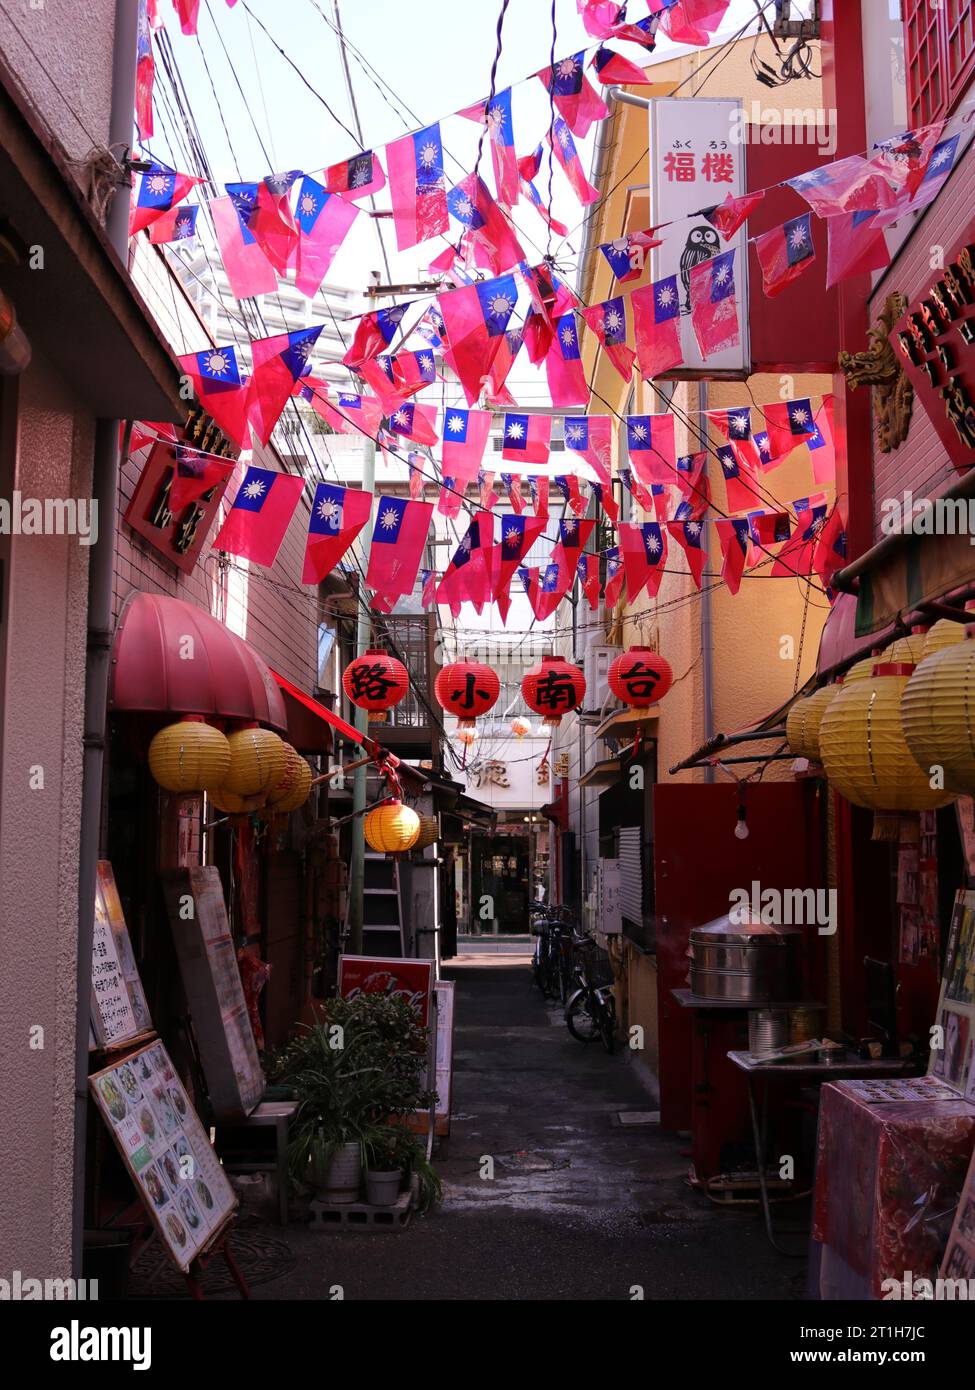 Eine der bekanntesten Gassen in Yokohama Chinatown, Japan. Die Taiwan Flaggen und Laternen machen diese Gasse einzigartig. Stockfoto